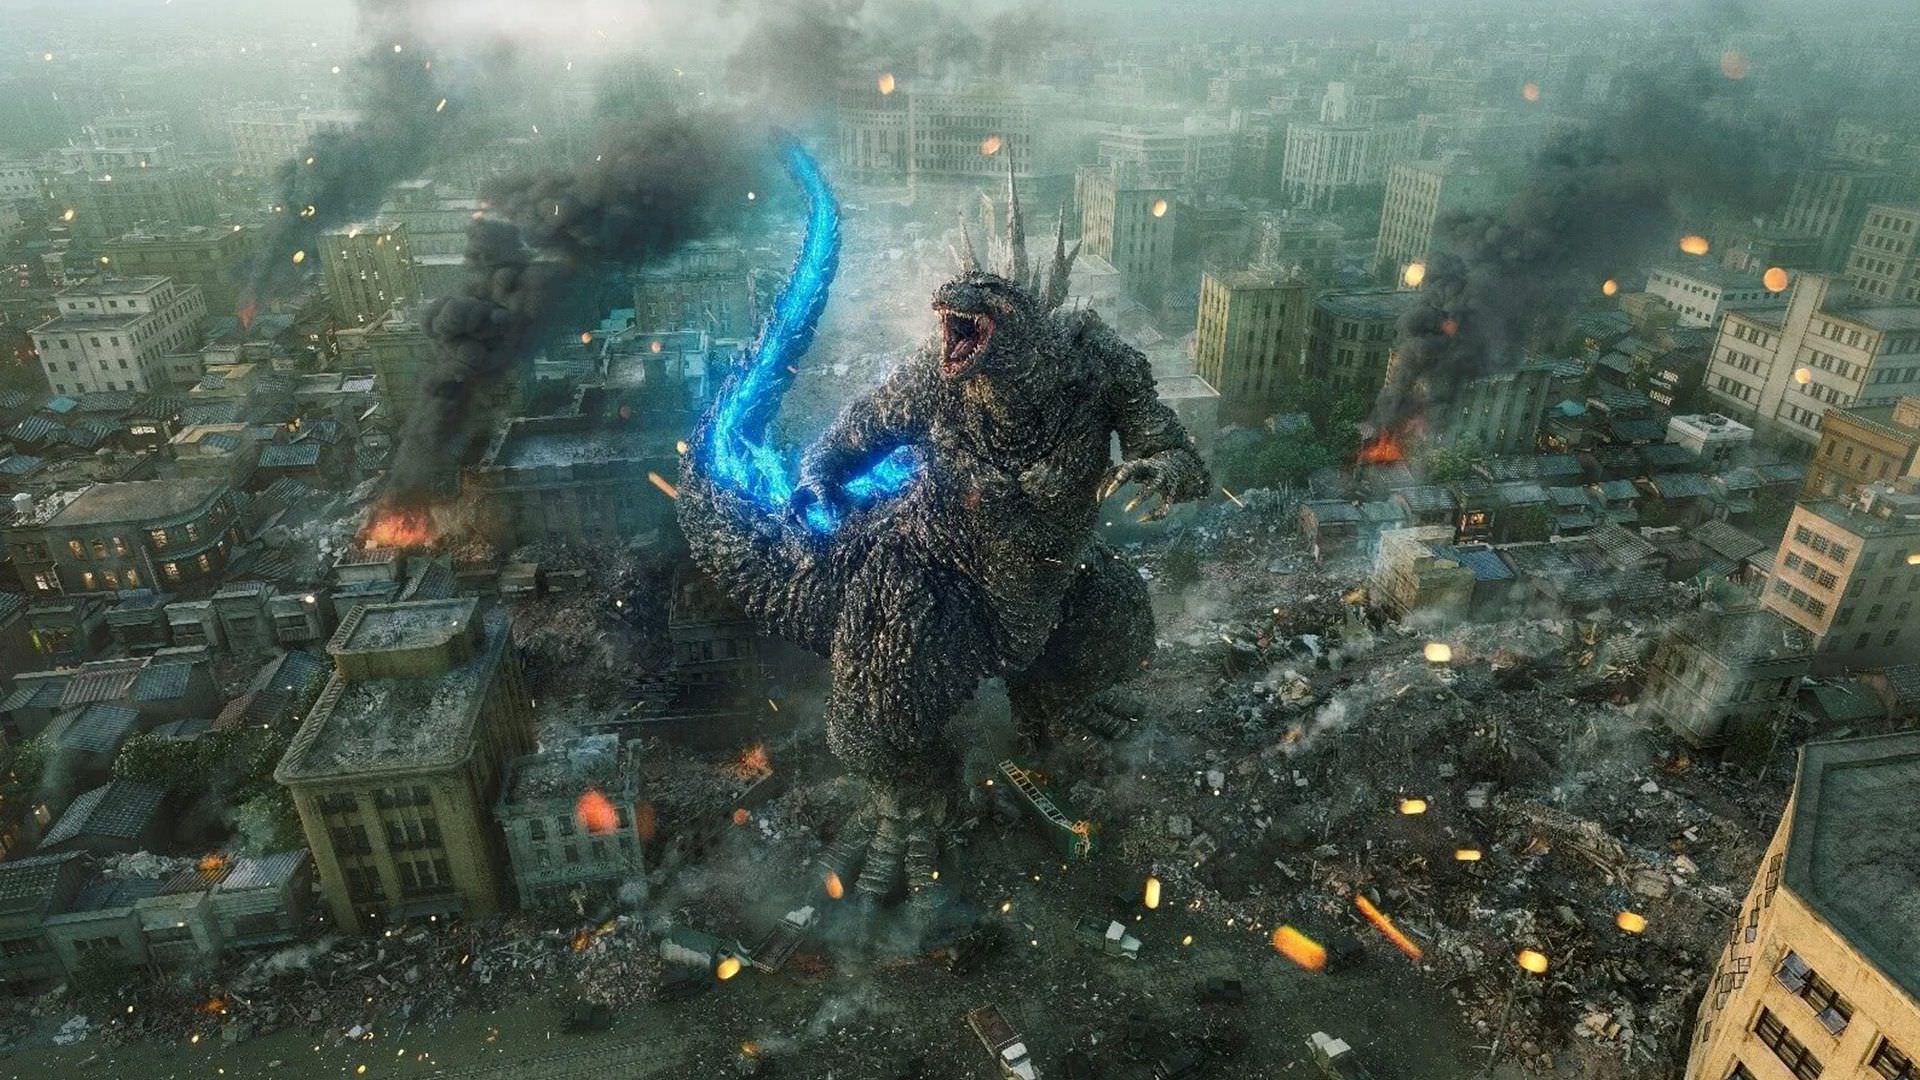 حمله گودزیلا به ژاپن در تریلر جدید فیلم Godzilla Minus One